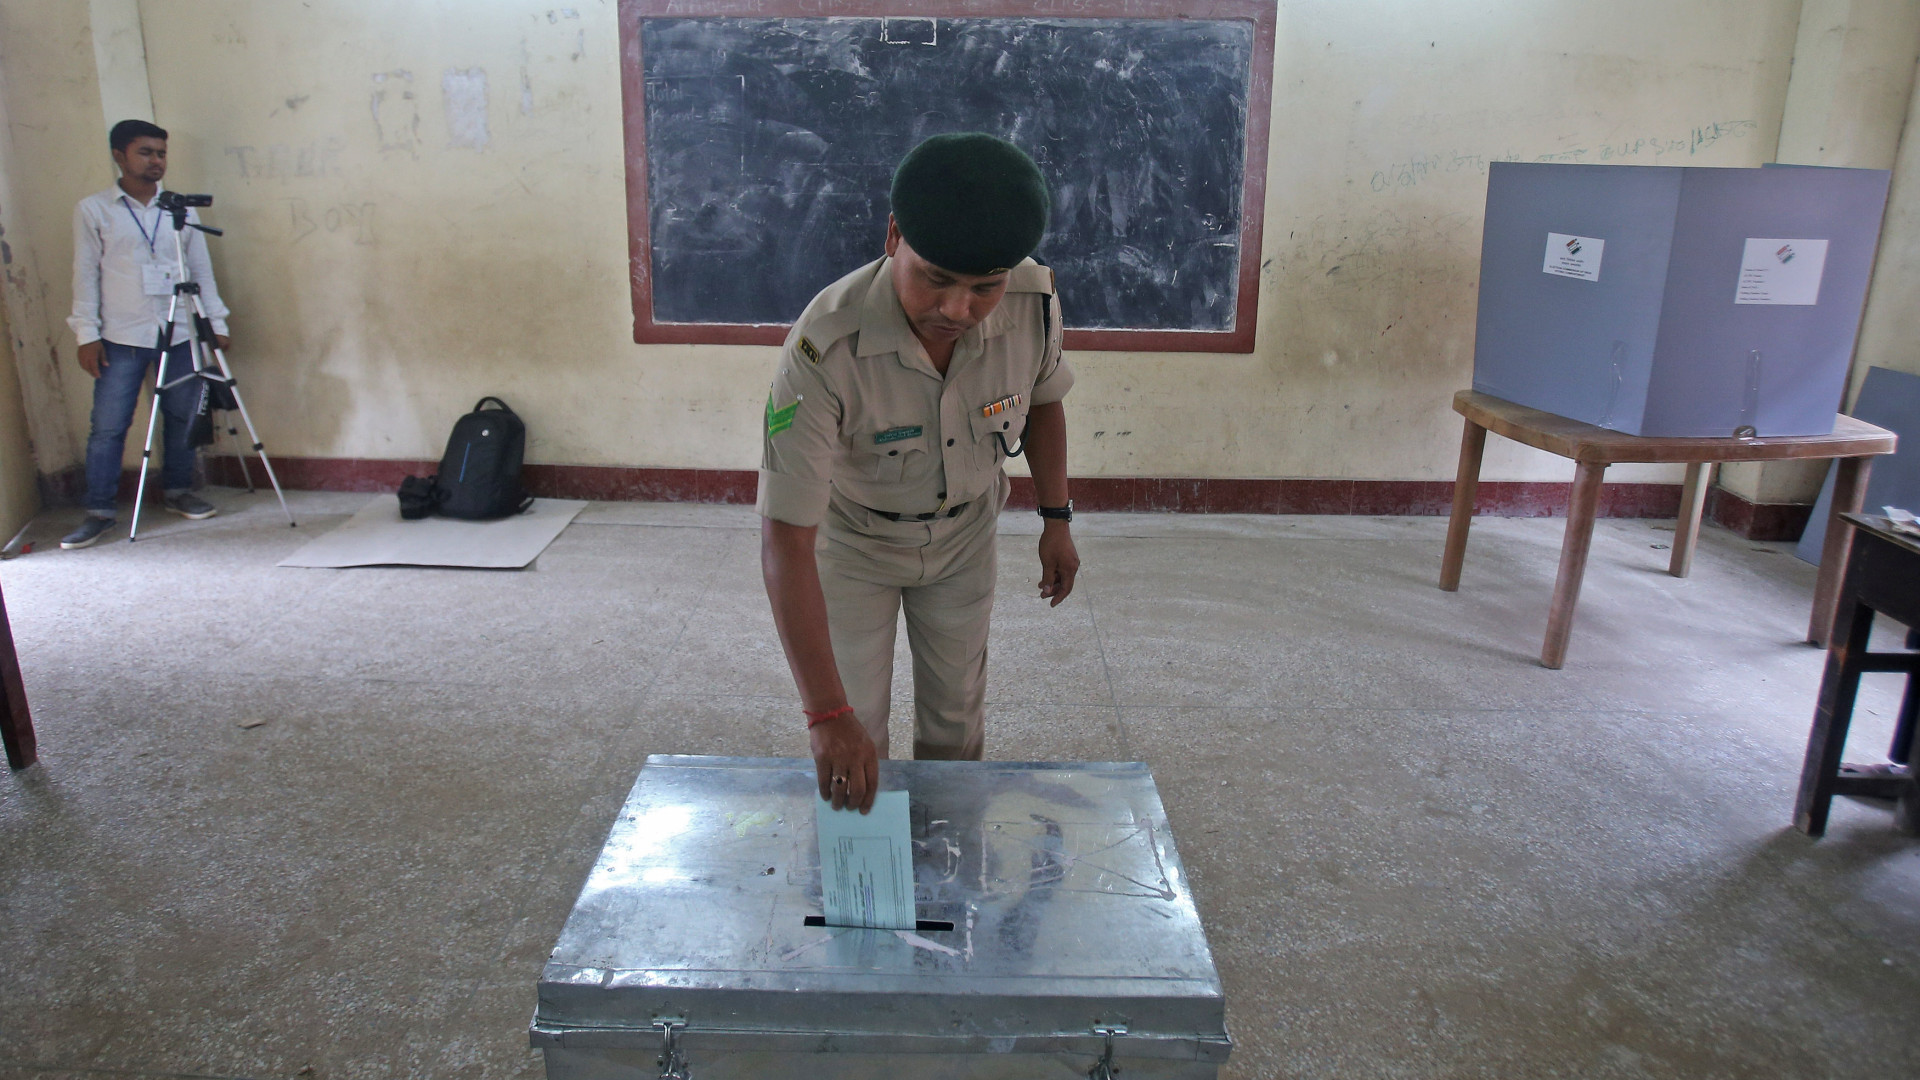 Indianos vão às urnas em eleição nacional